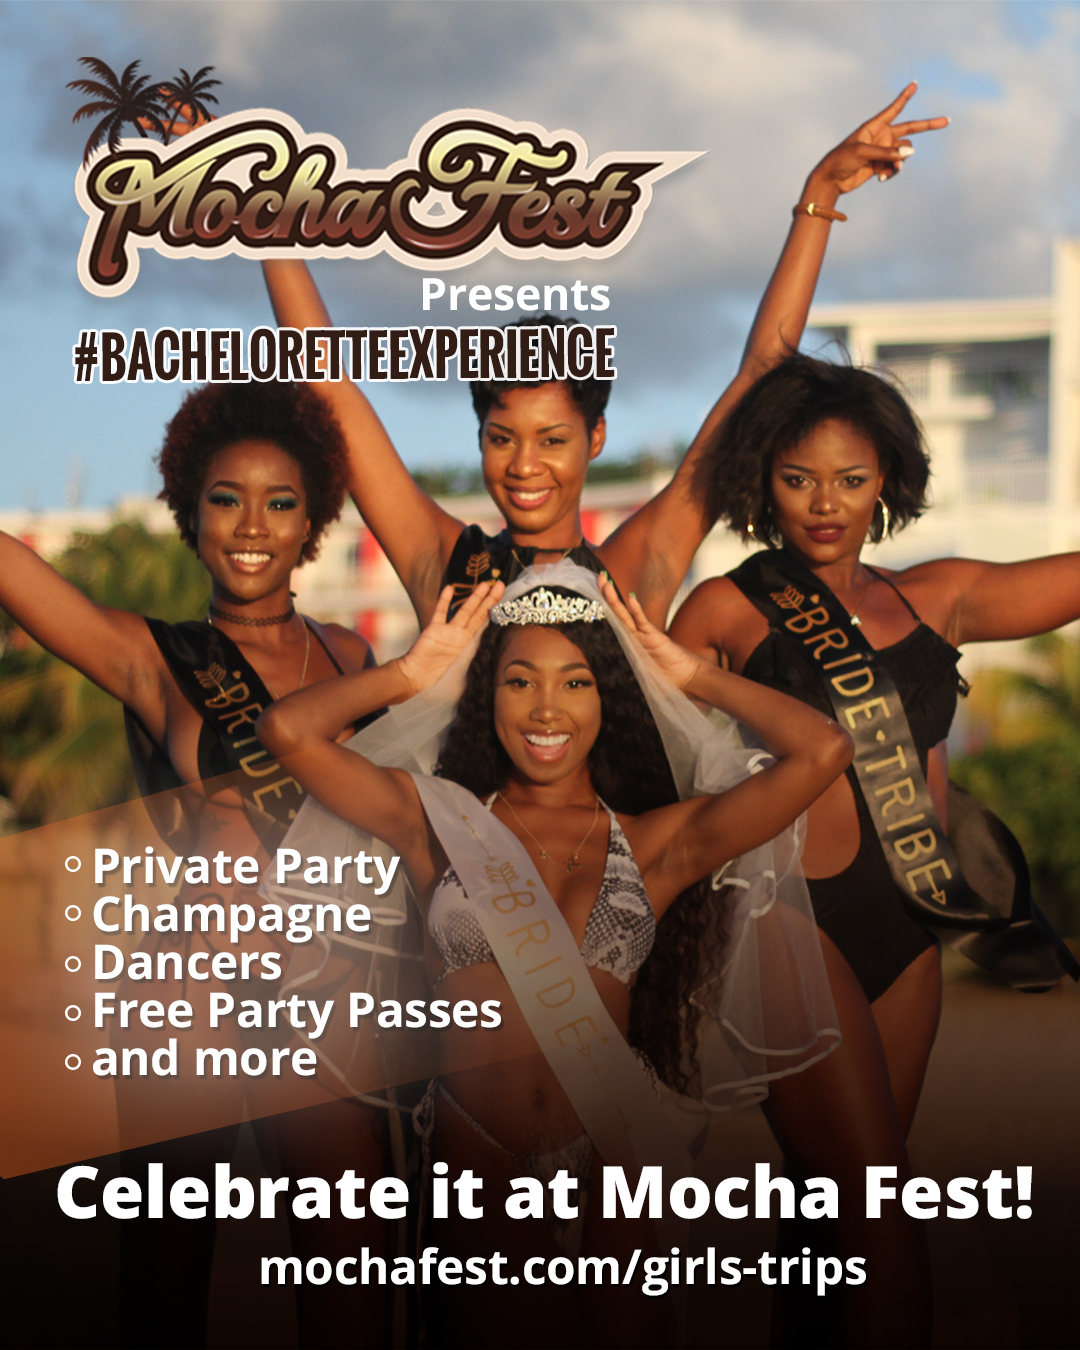 Mocha Fest Introduces Bachelorette Experiences